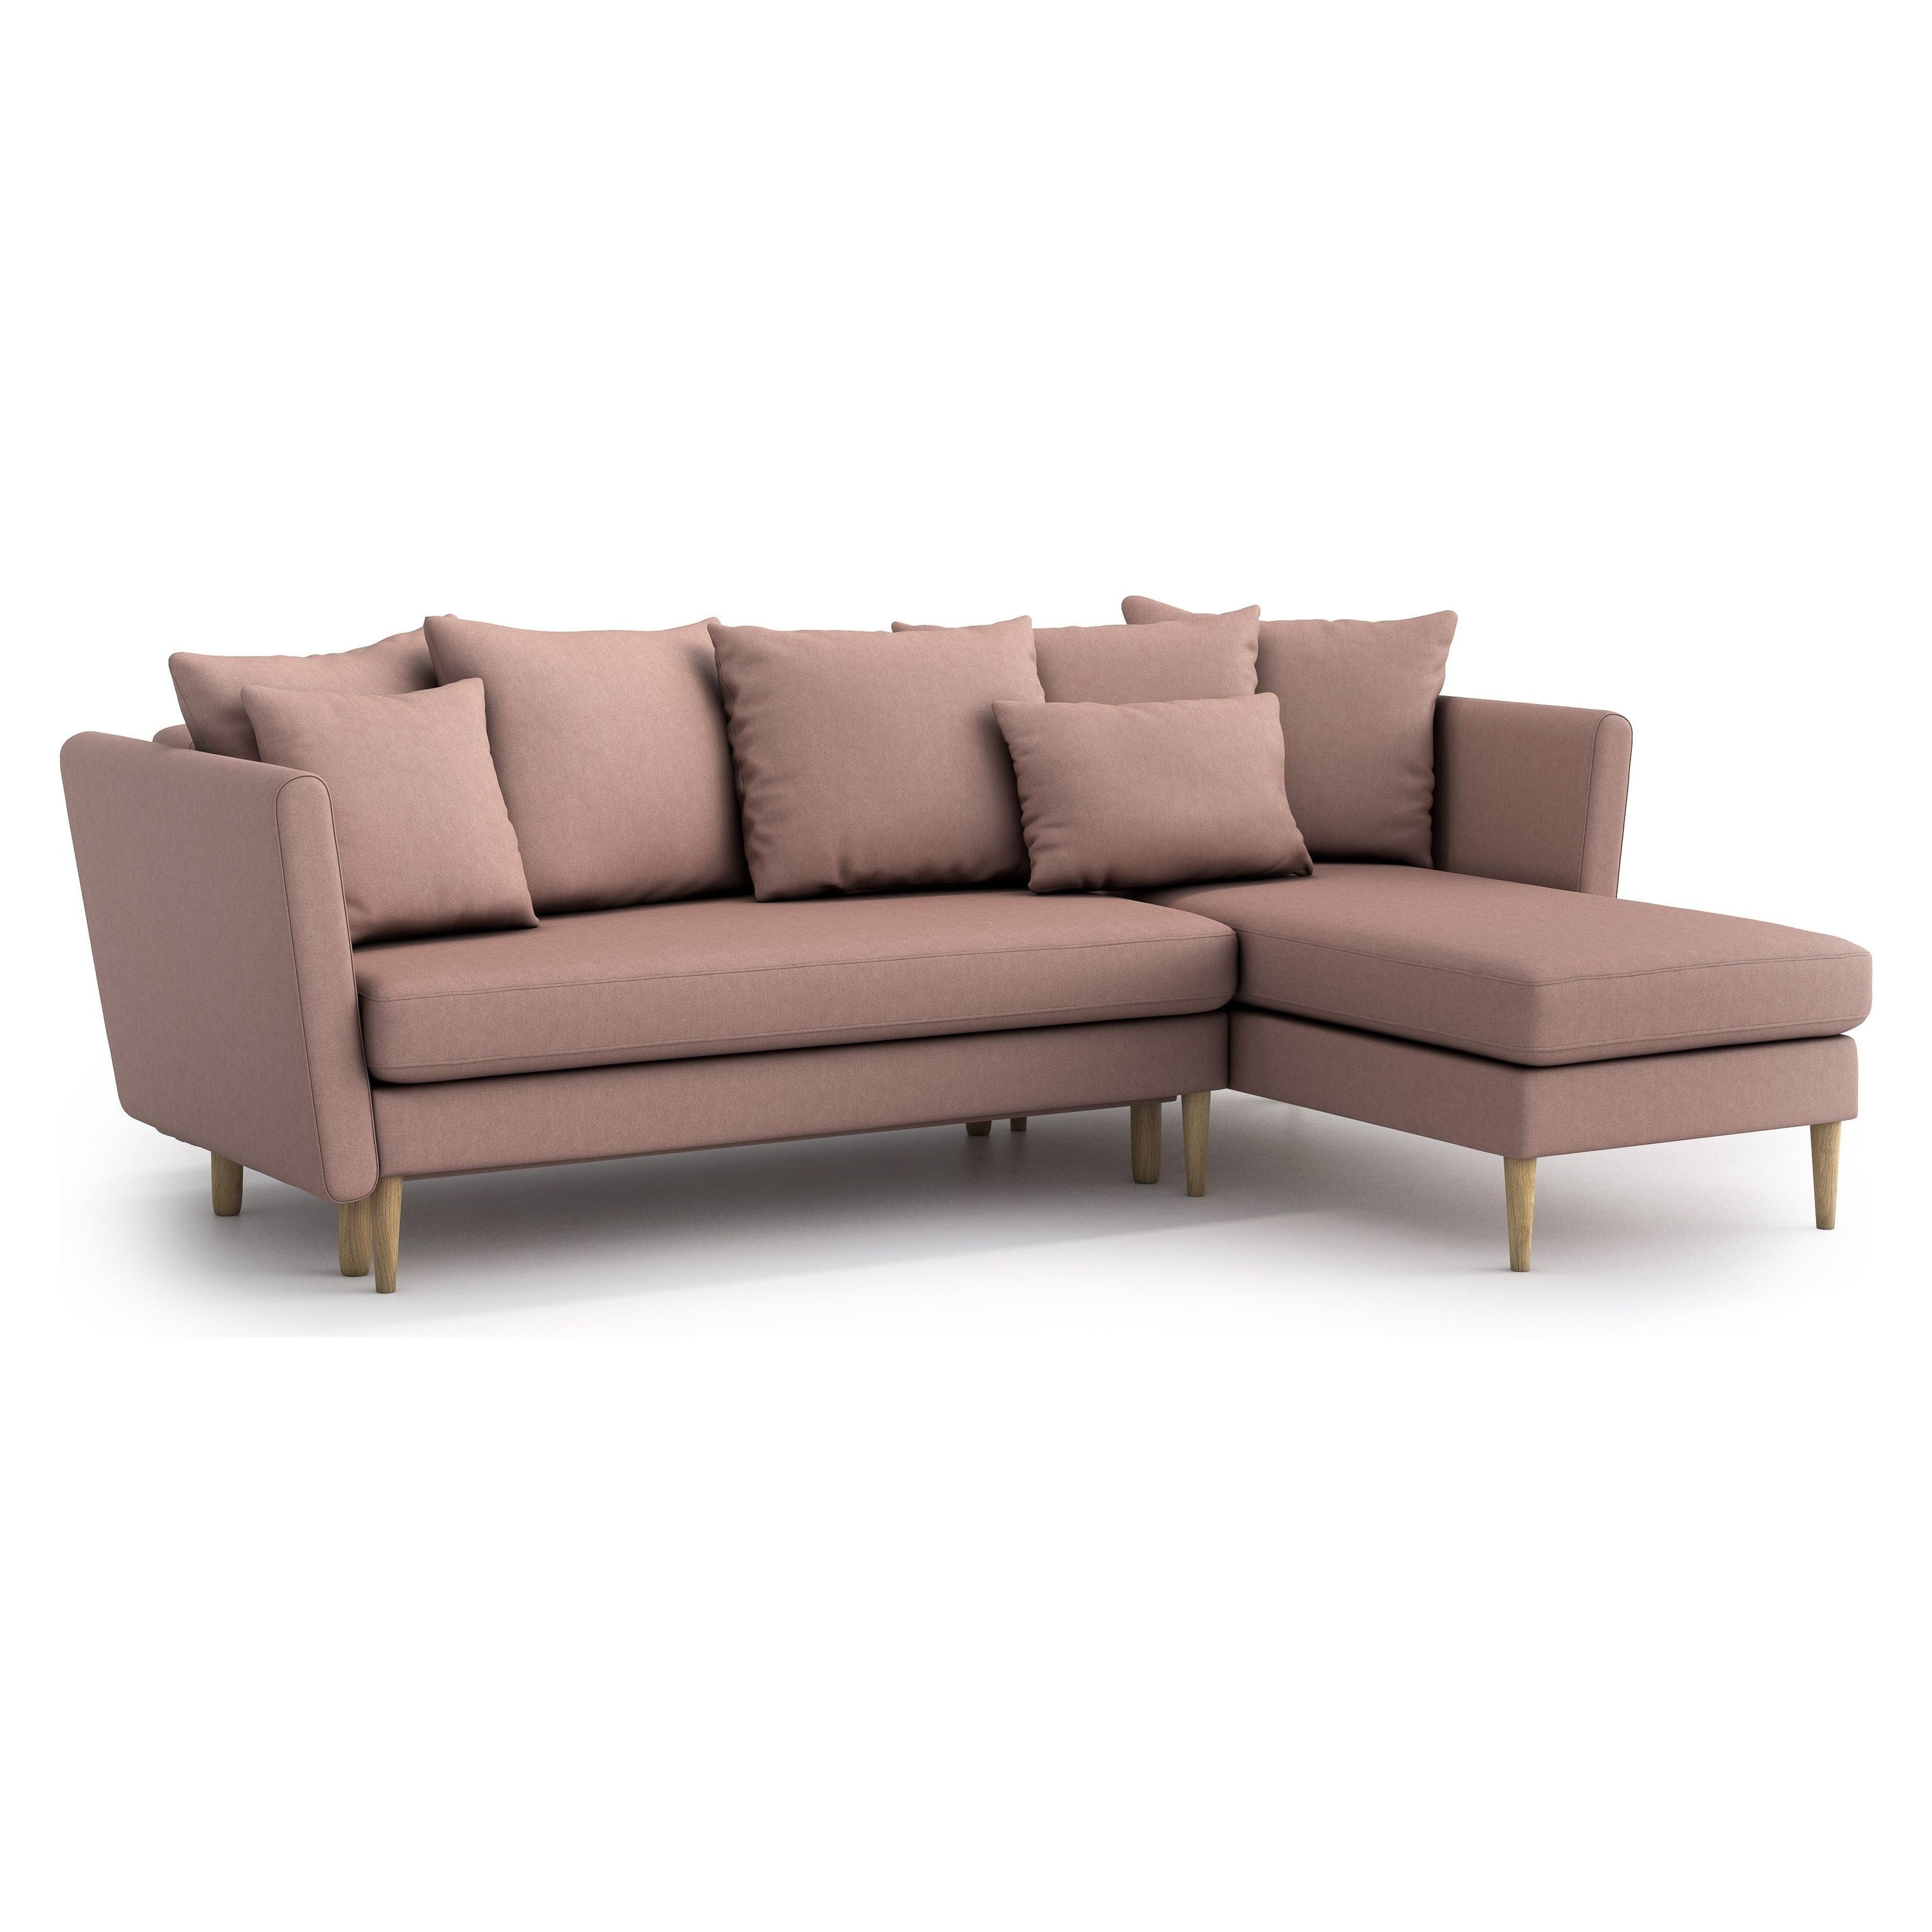 JOLEEN kampinė sofa lova, rožinė spalva, universali kampo pusė